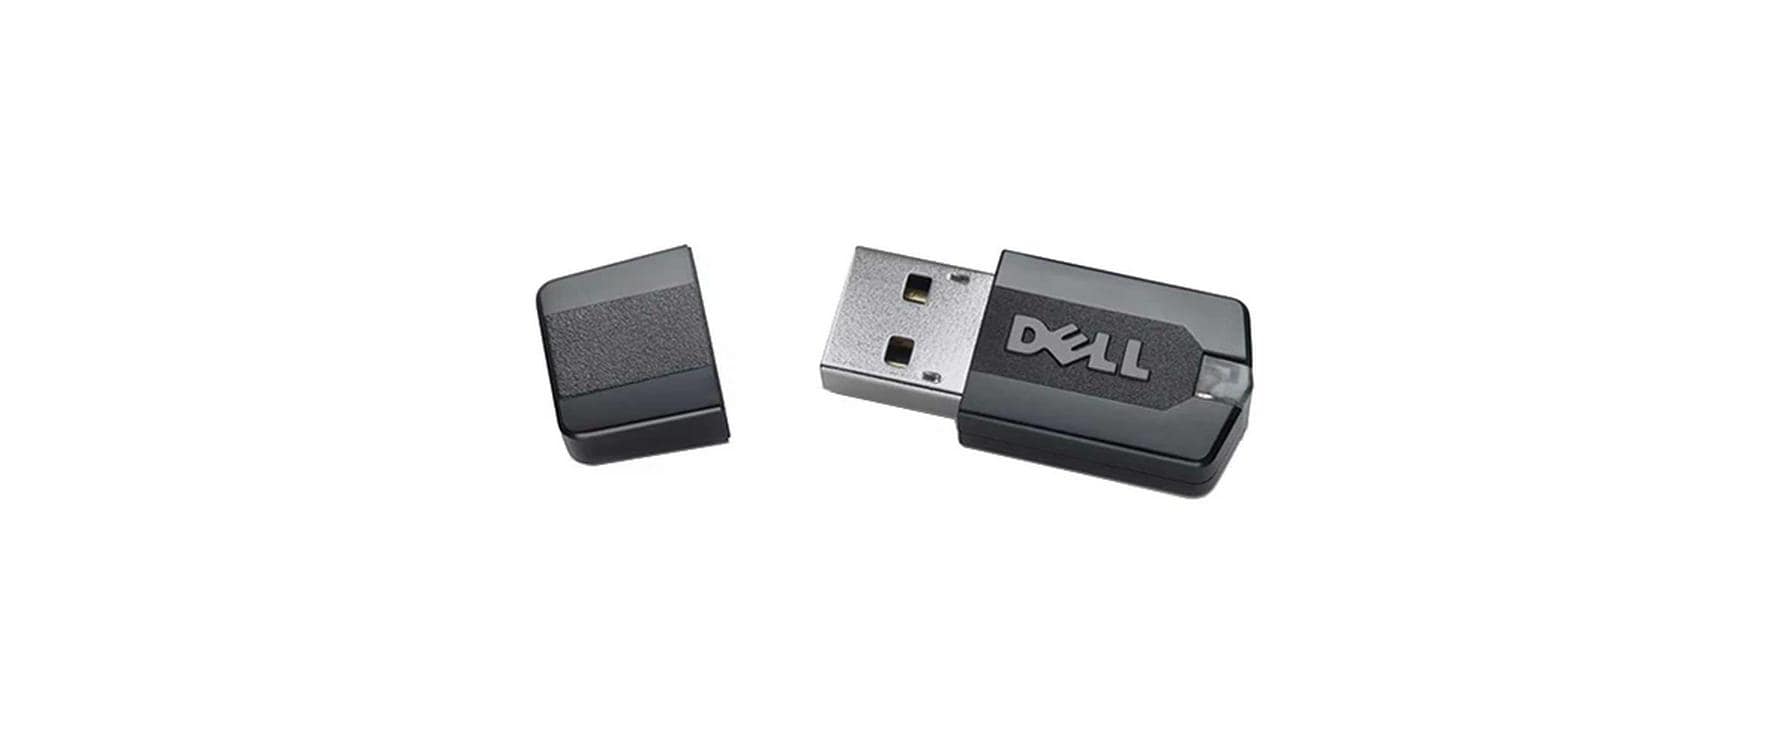 DELL USB Remote Access Key